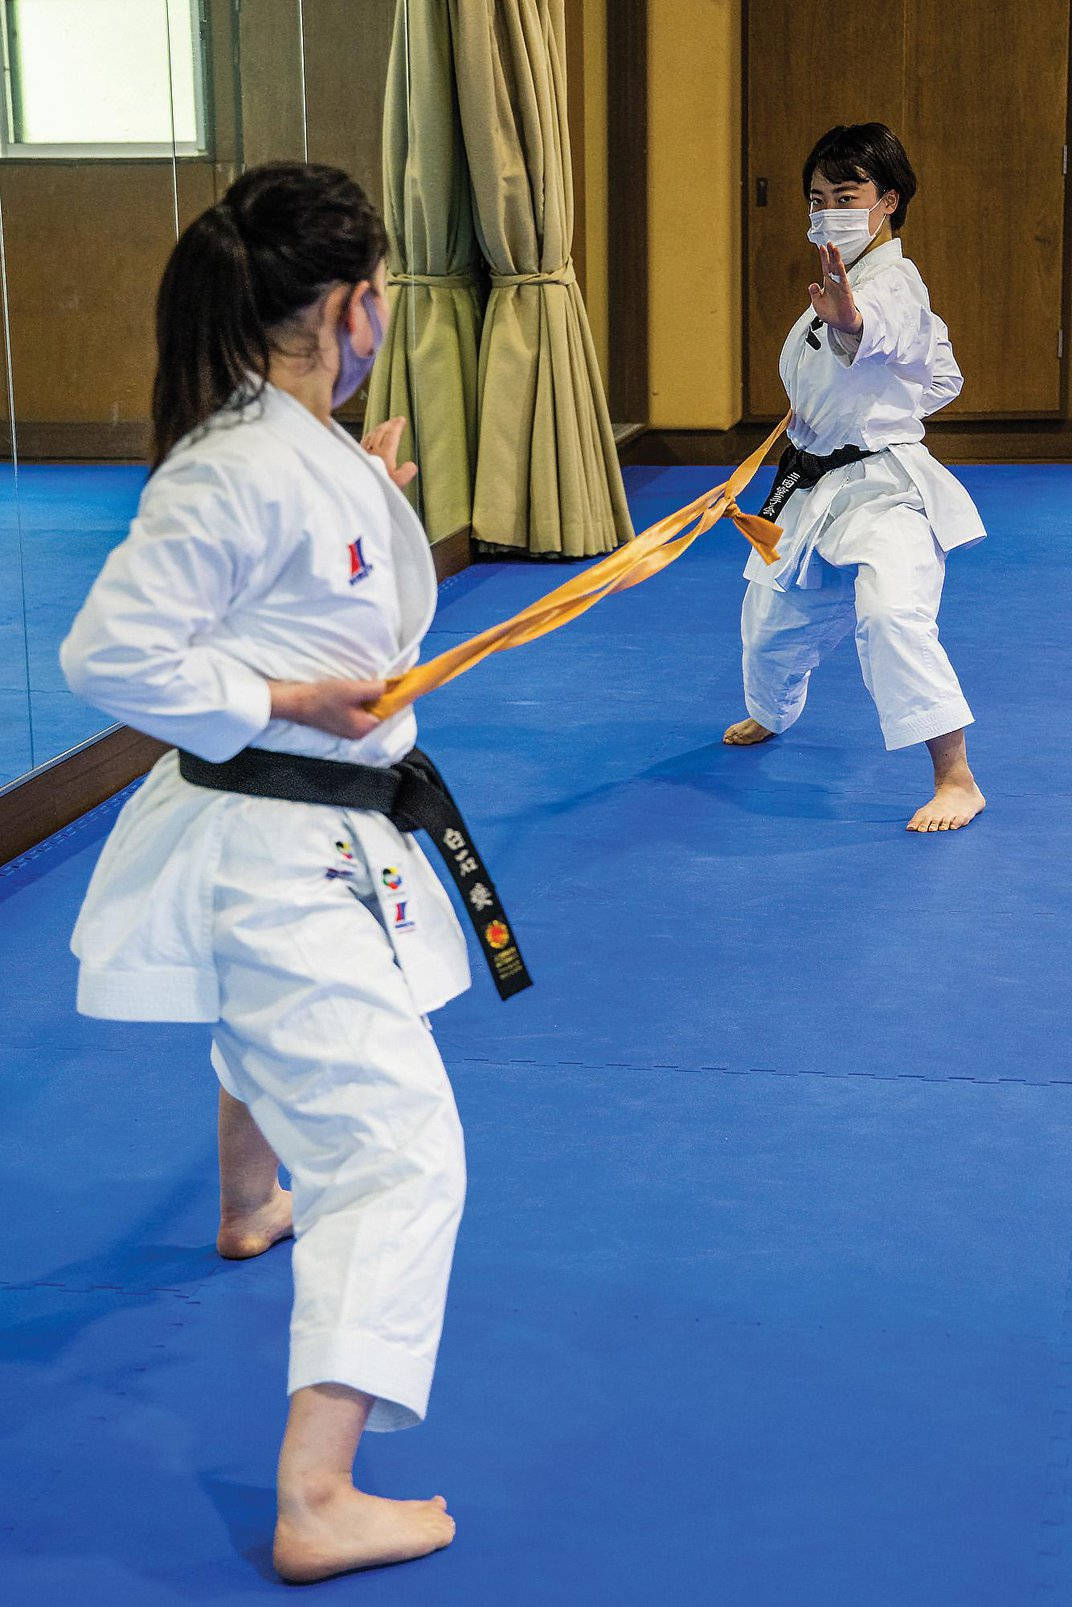 Karatedos Mujeres En Postura De Combate. Fondo de pantalla